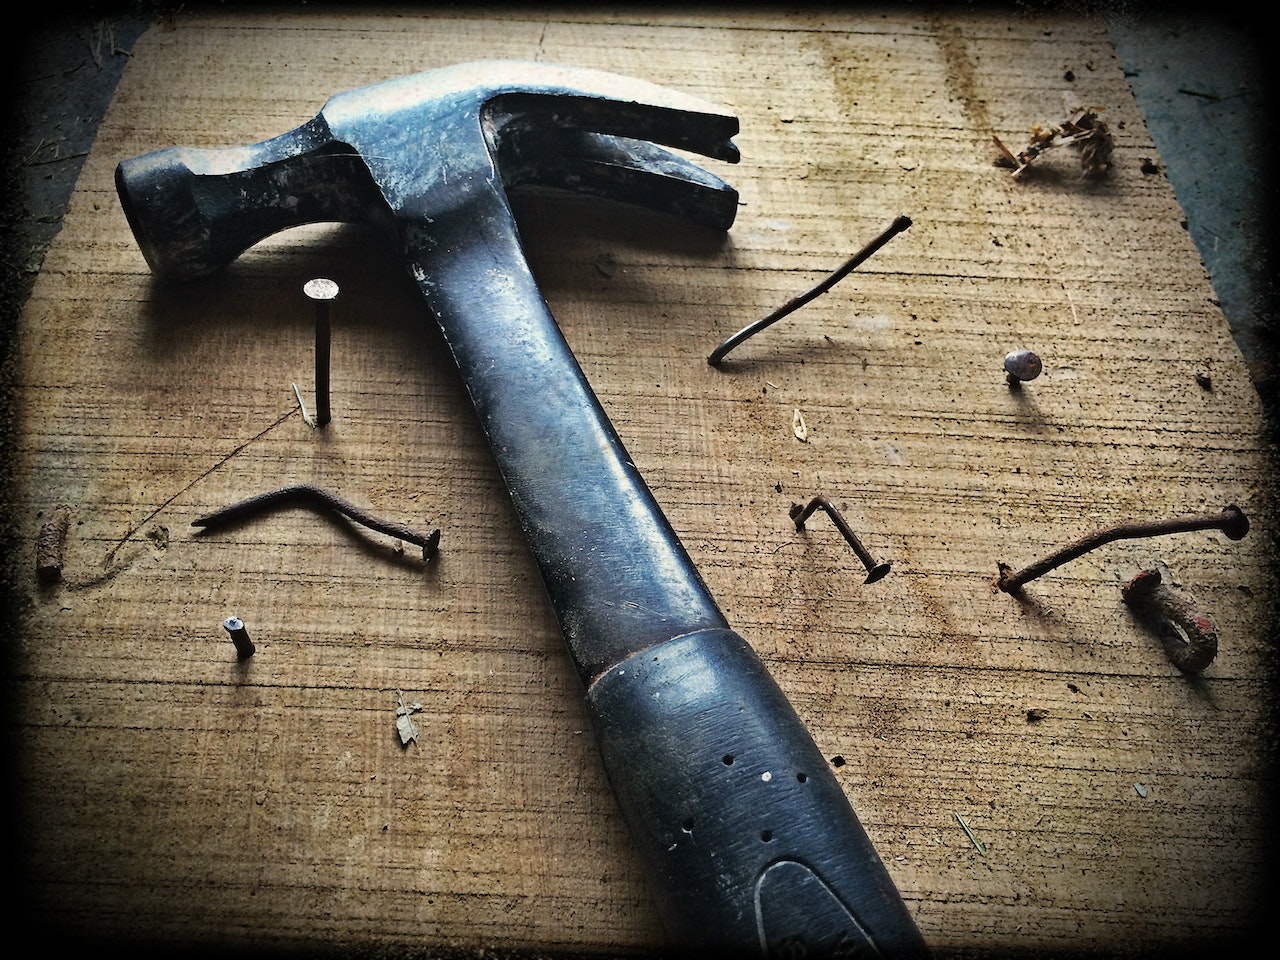 black hammer and nails